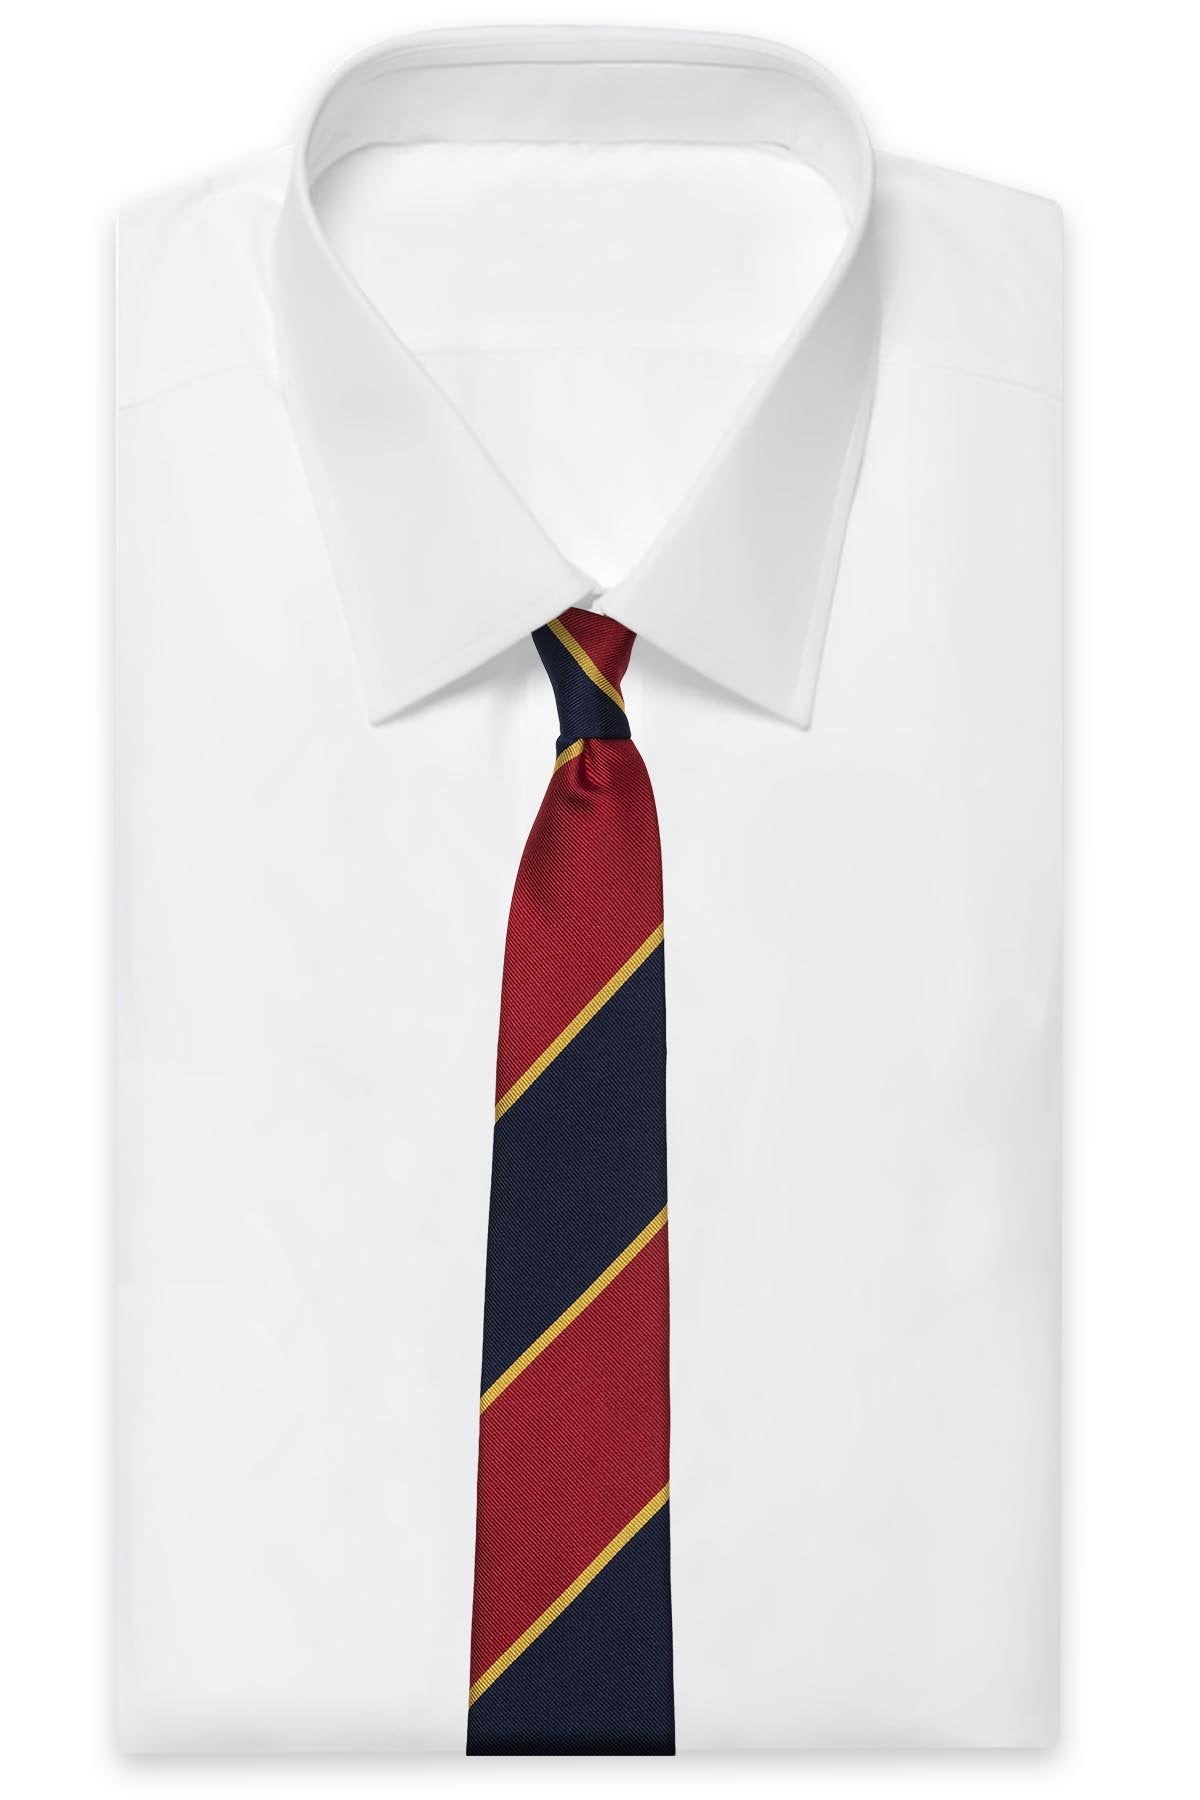 AN IVY Slips Red Navy Golden College Silk Tie